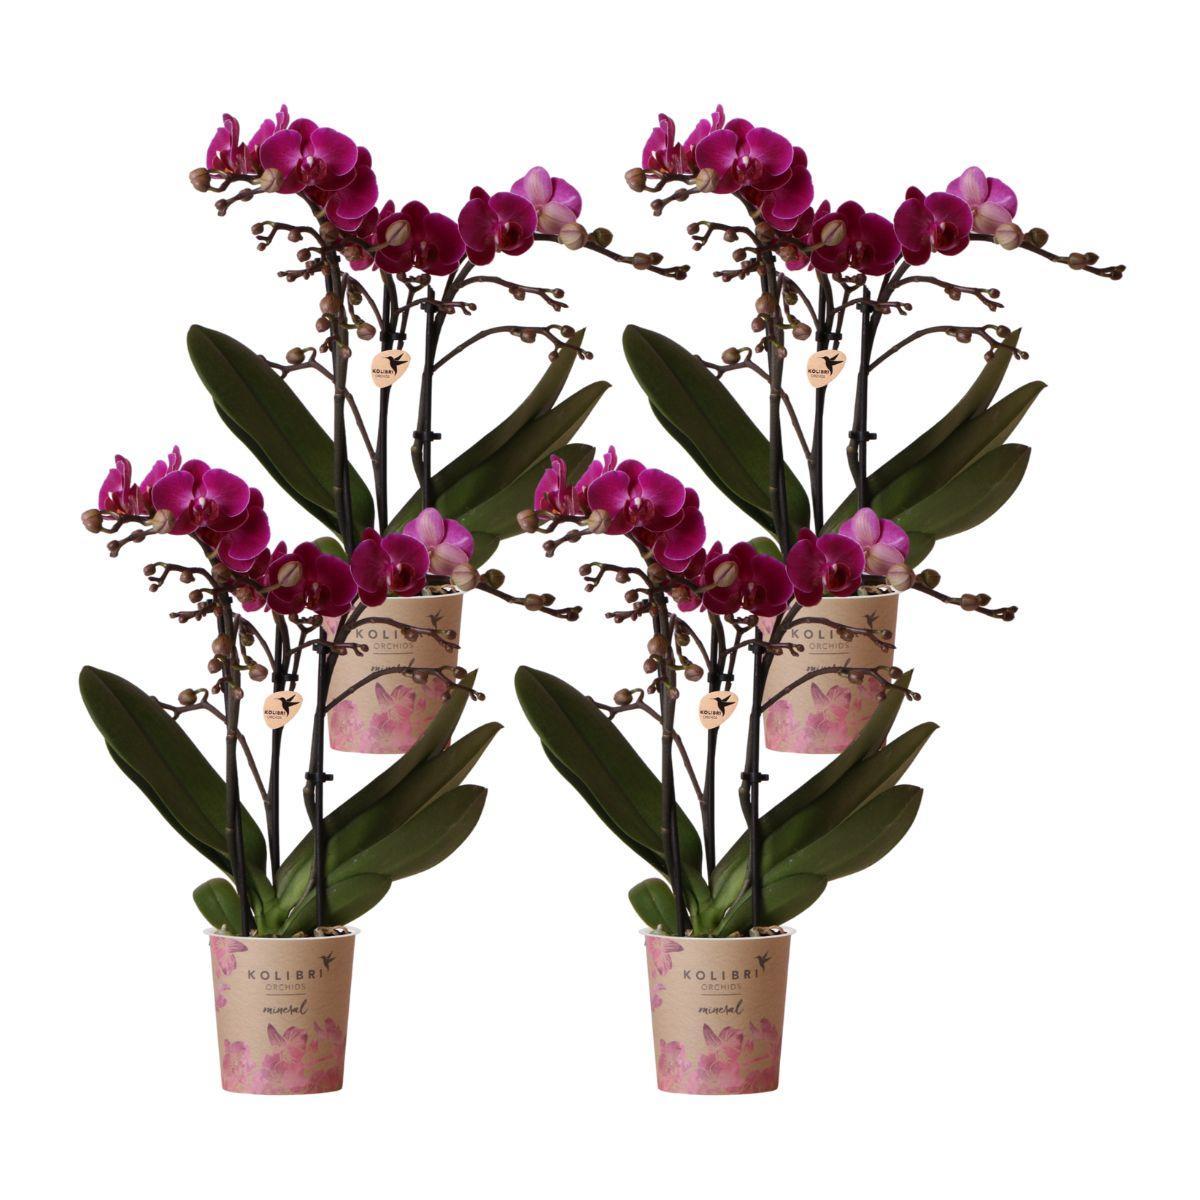 Everspring Kolibri orchids | paarse phalaenopsis orchidee - morelia - potmaat ø9cm | bloeiende kamerplant - vers van de kweker kolibri orchids | combi deal van 4 paa